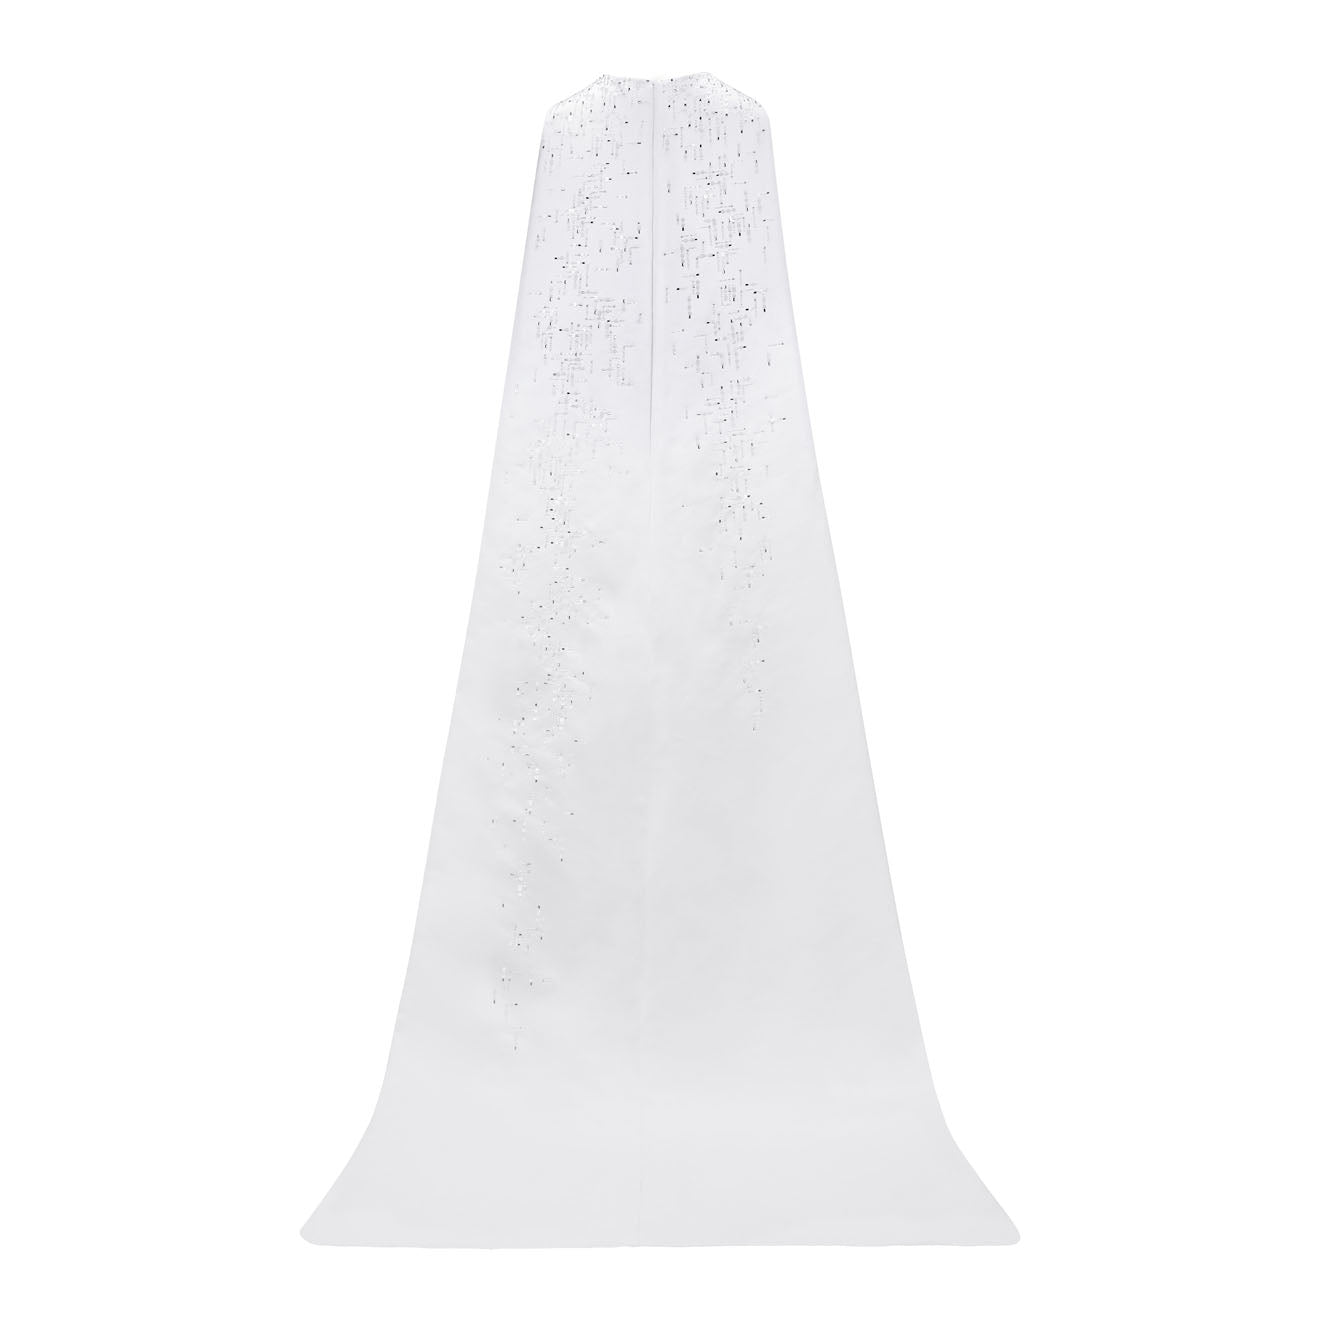 Royal embellished tubino wedding dress with long cape